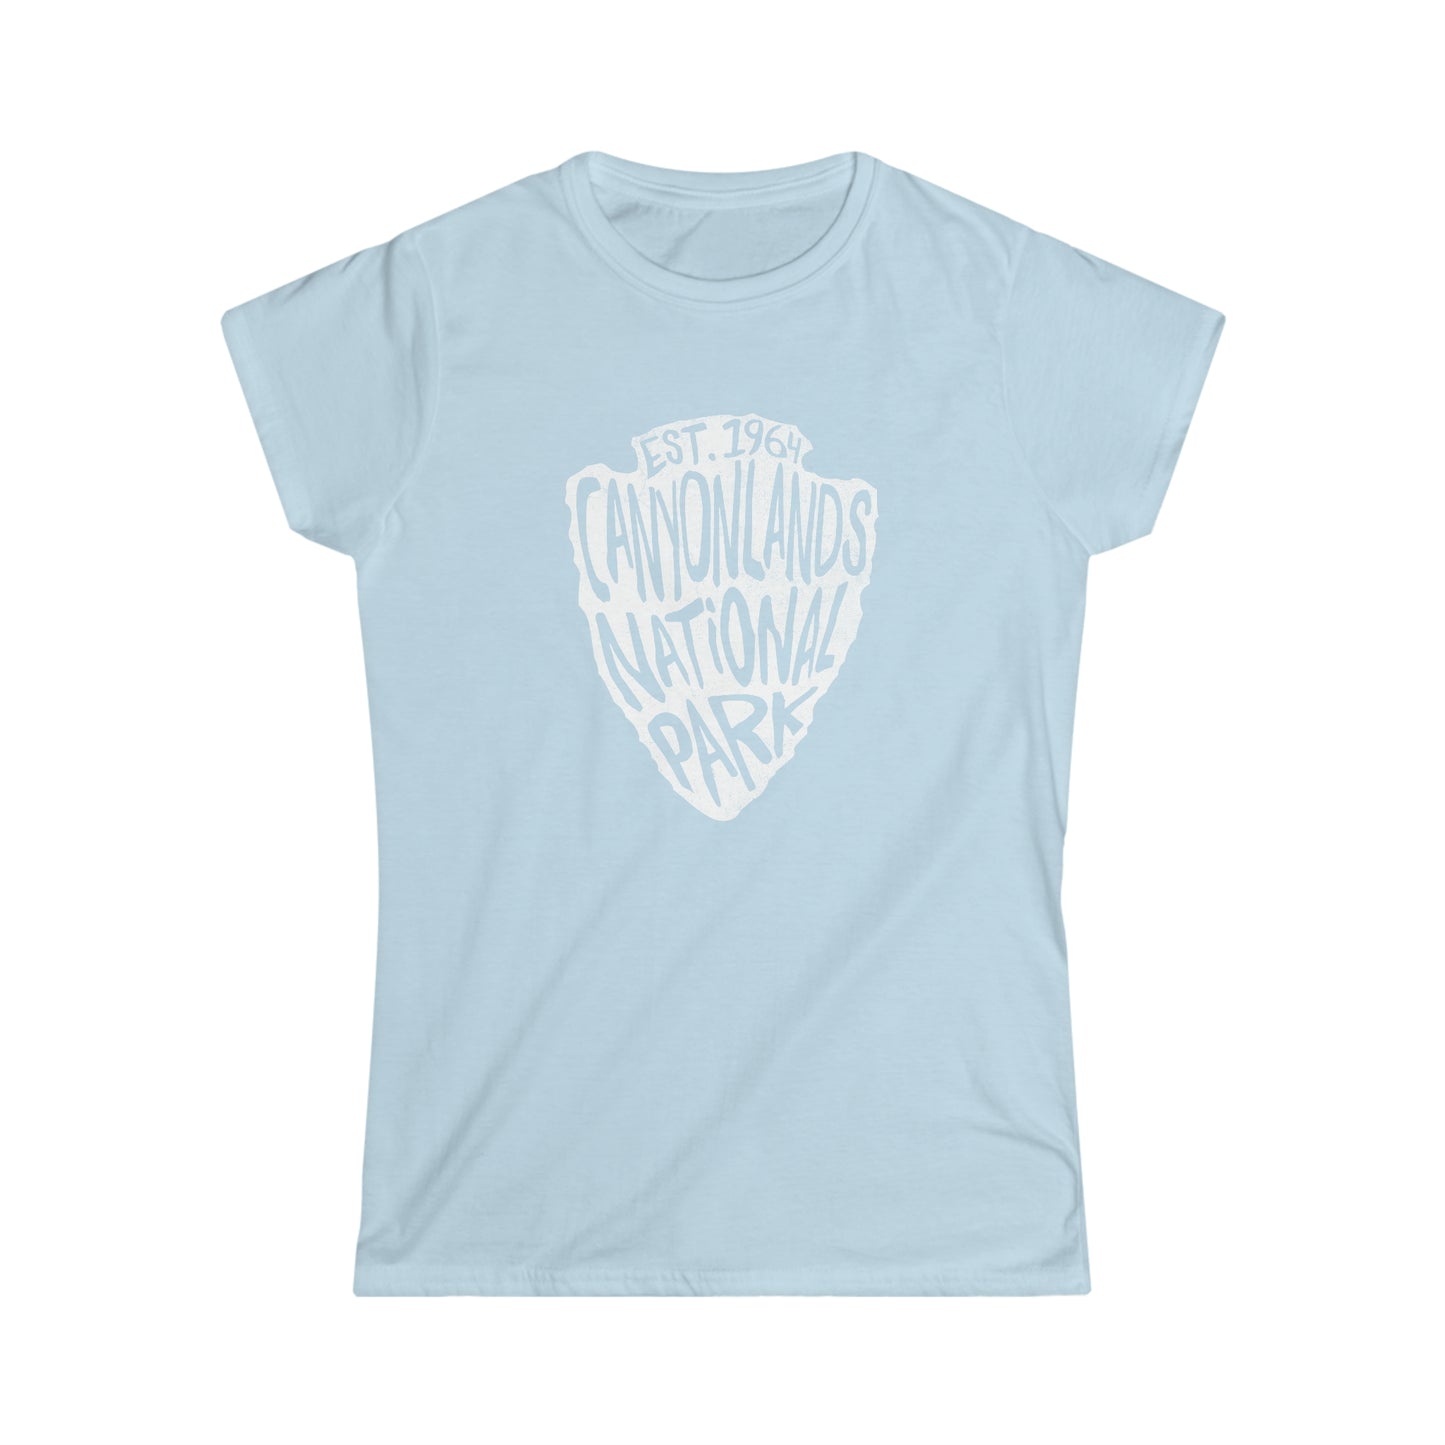 Canyonlands National Park Women's T-Shirt - Arrowhead Design